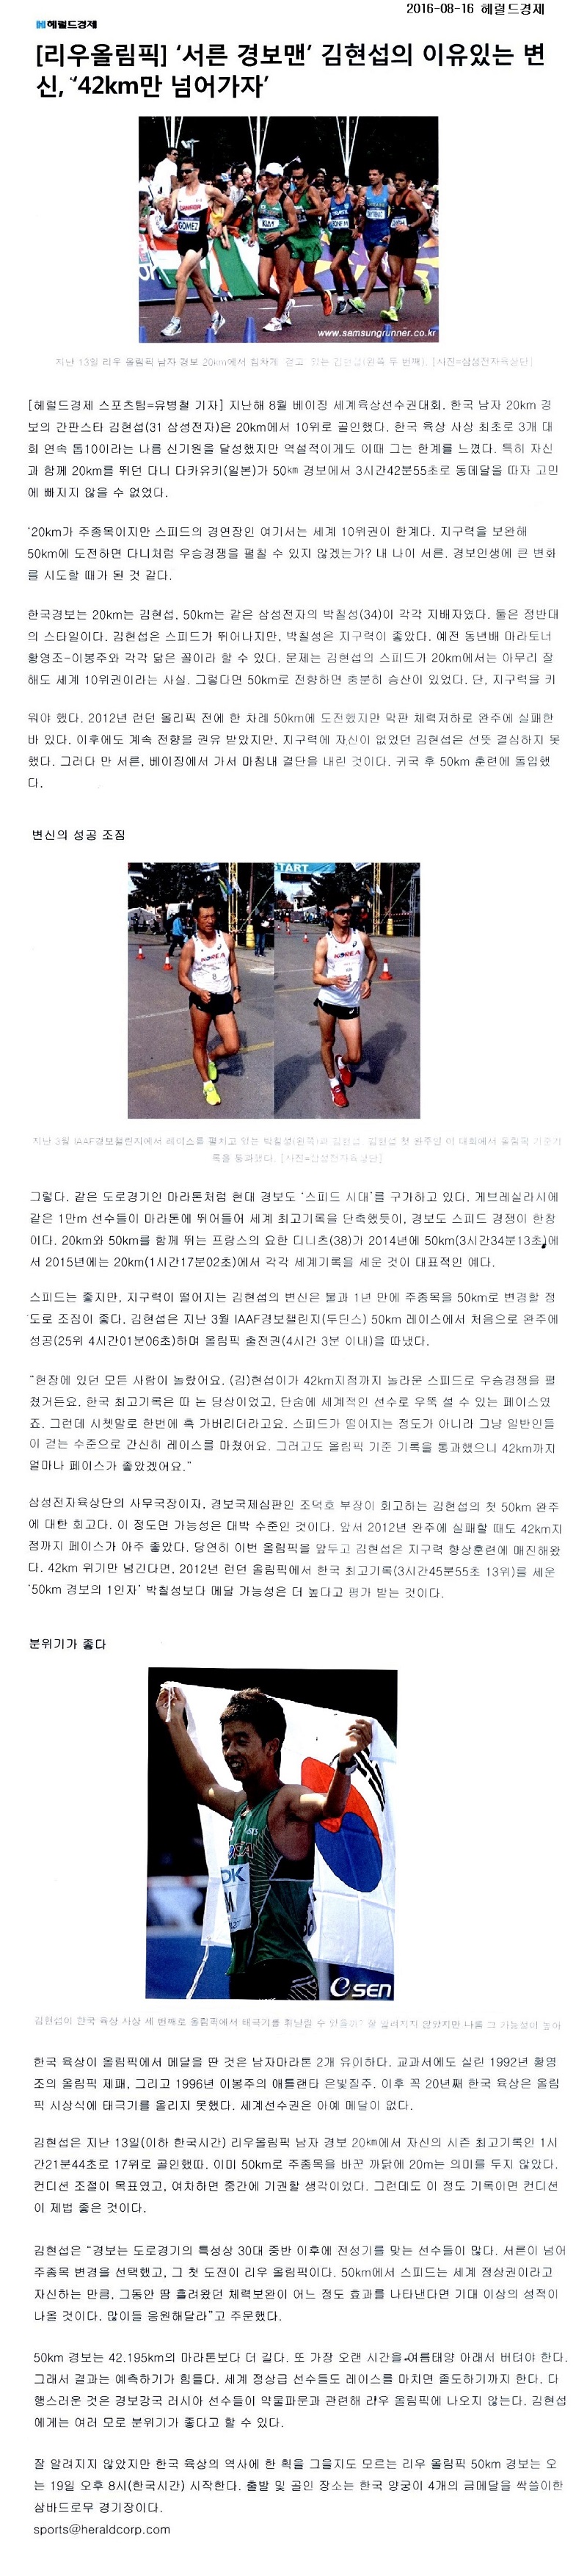 서른 경보맨’김현섭의 이유있는 변신,‘42km만 넘어가자’